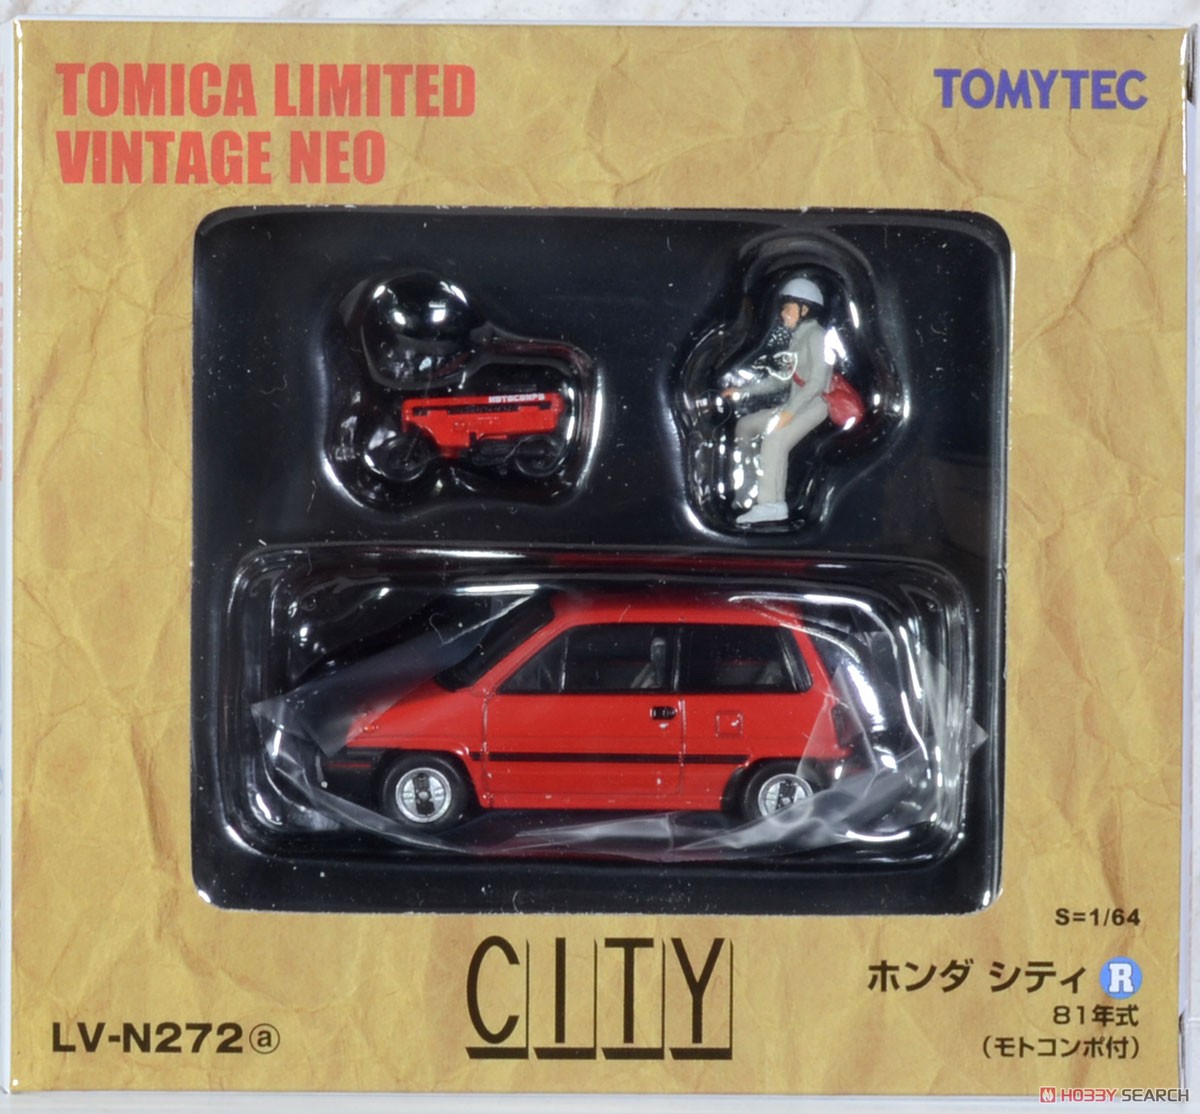 TLV-N272a ホンダ シティR (赤) モトコンポ付 81年式 (ミニカー) パッケージ1